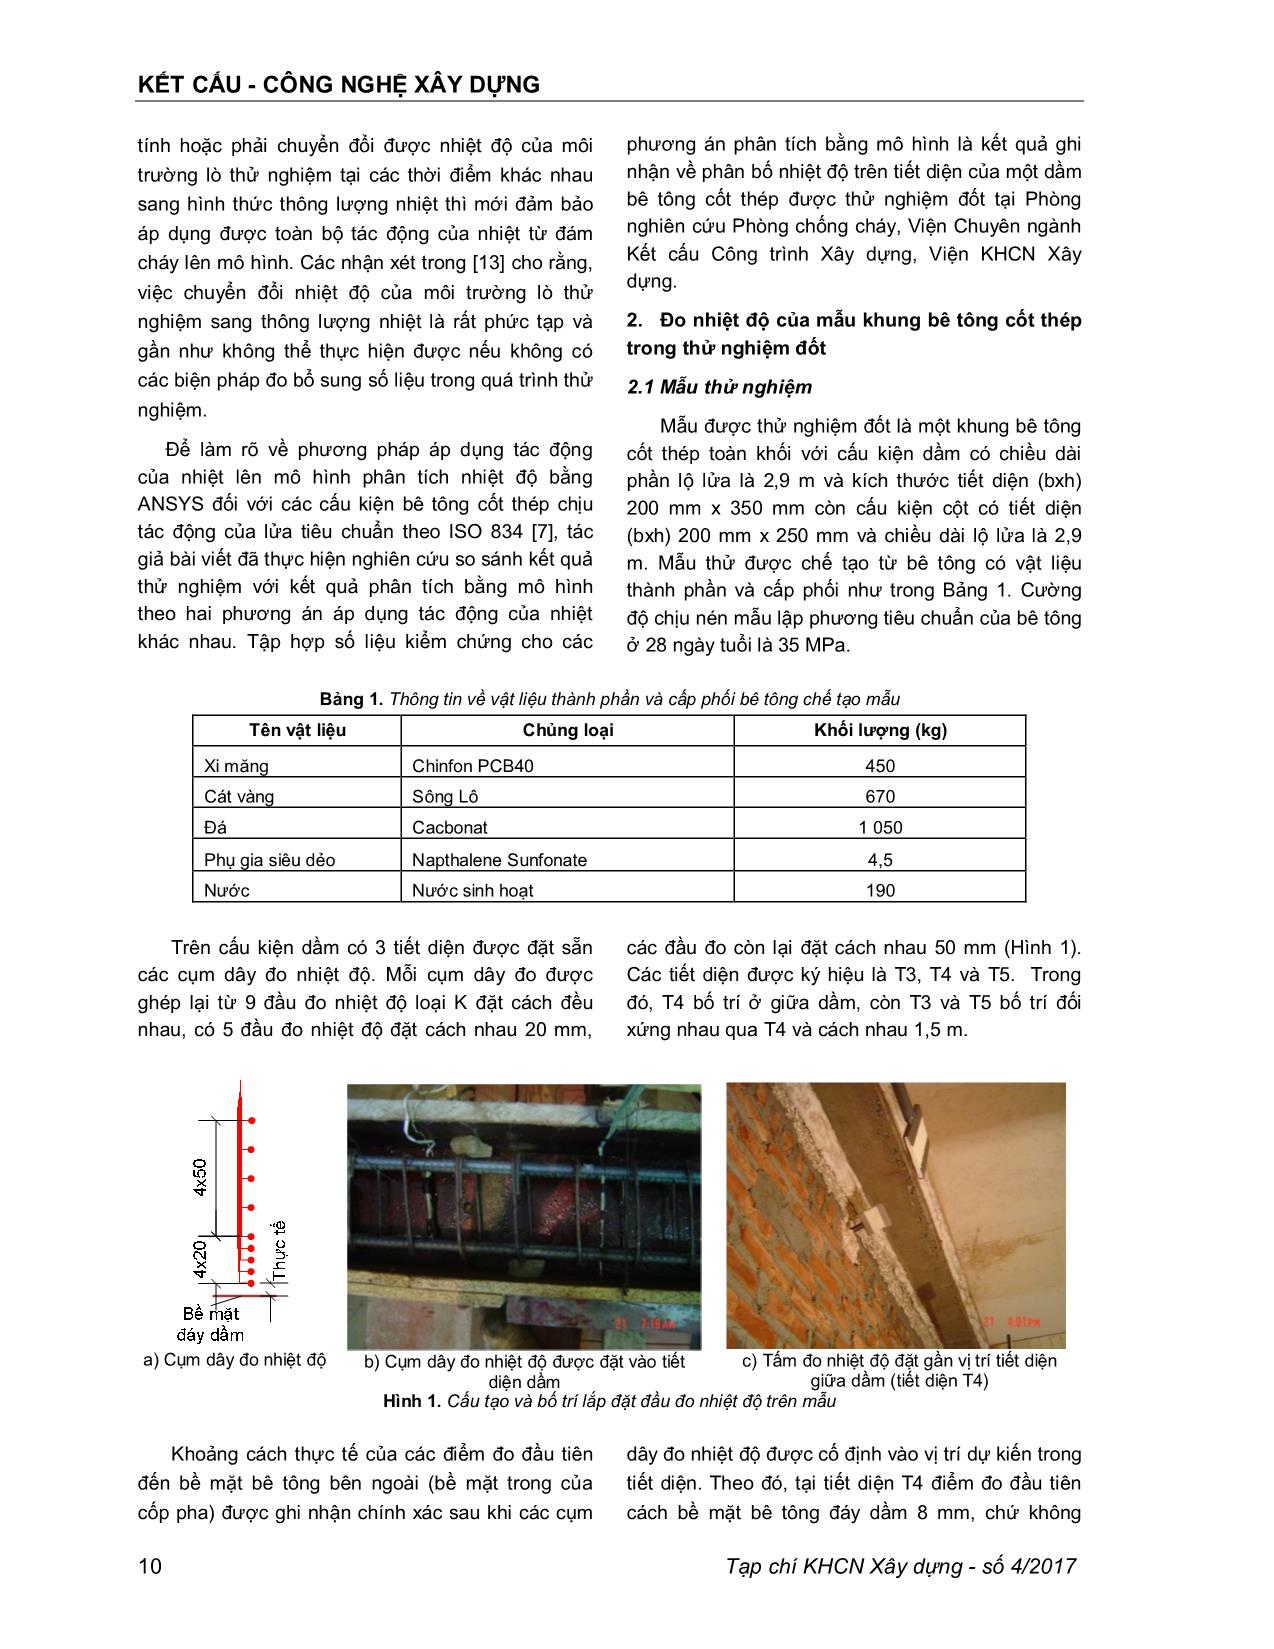 Dầm bê tông cốt thép chịu tác động của lửa - Lựa chọn phần tử cho mô hình nhiệt học trong Ansys trang 2